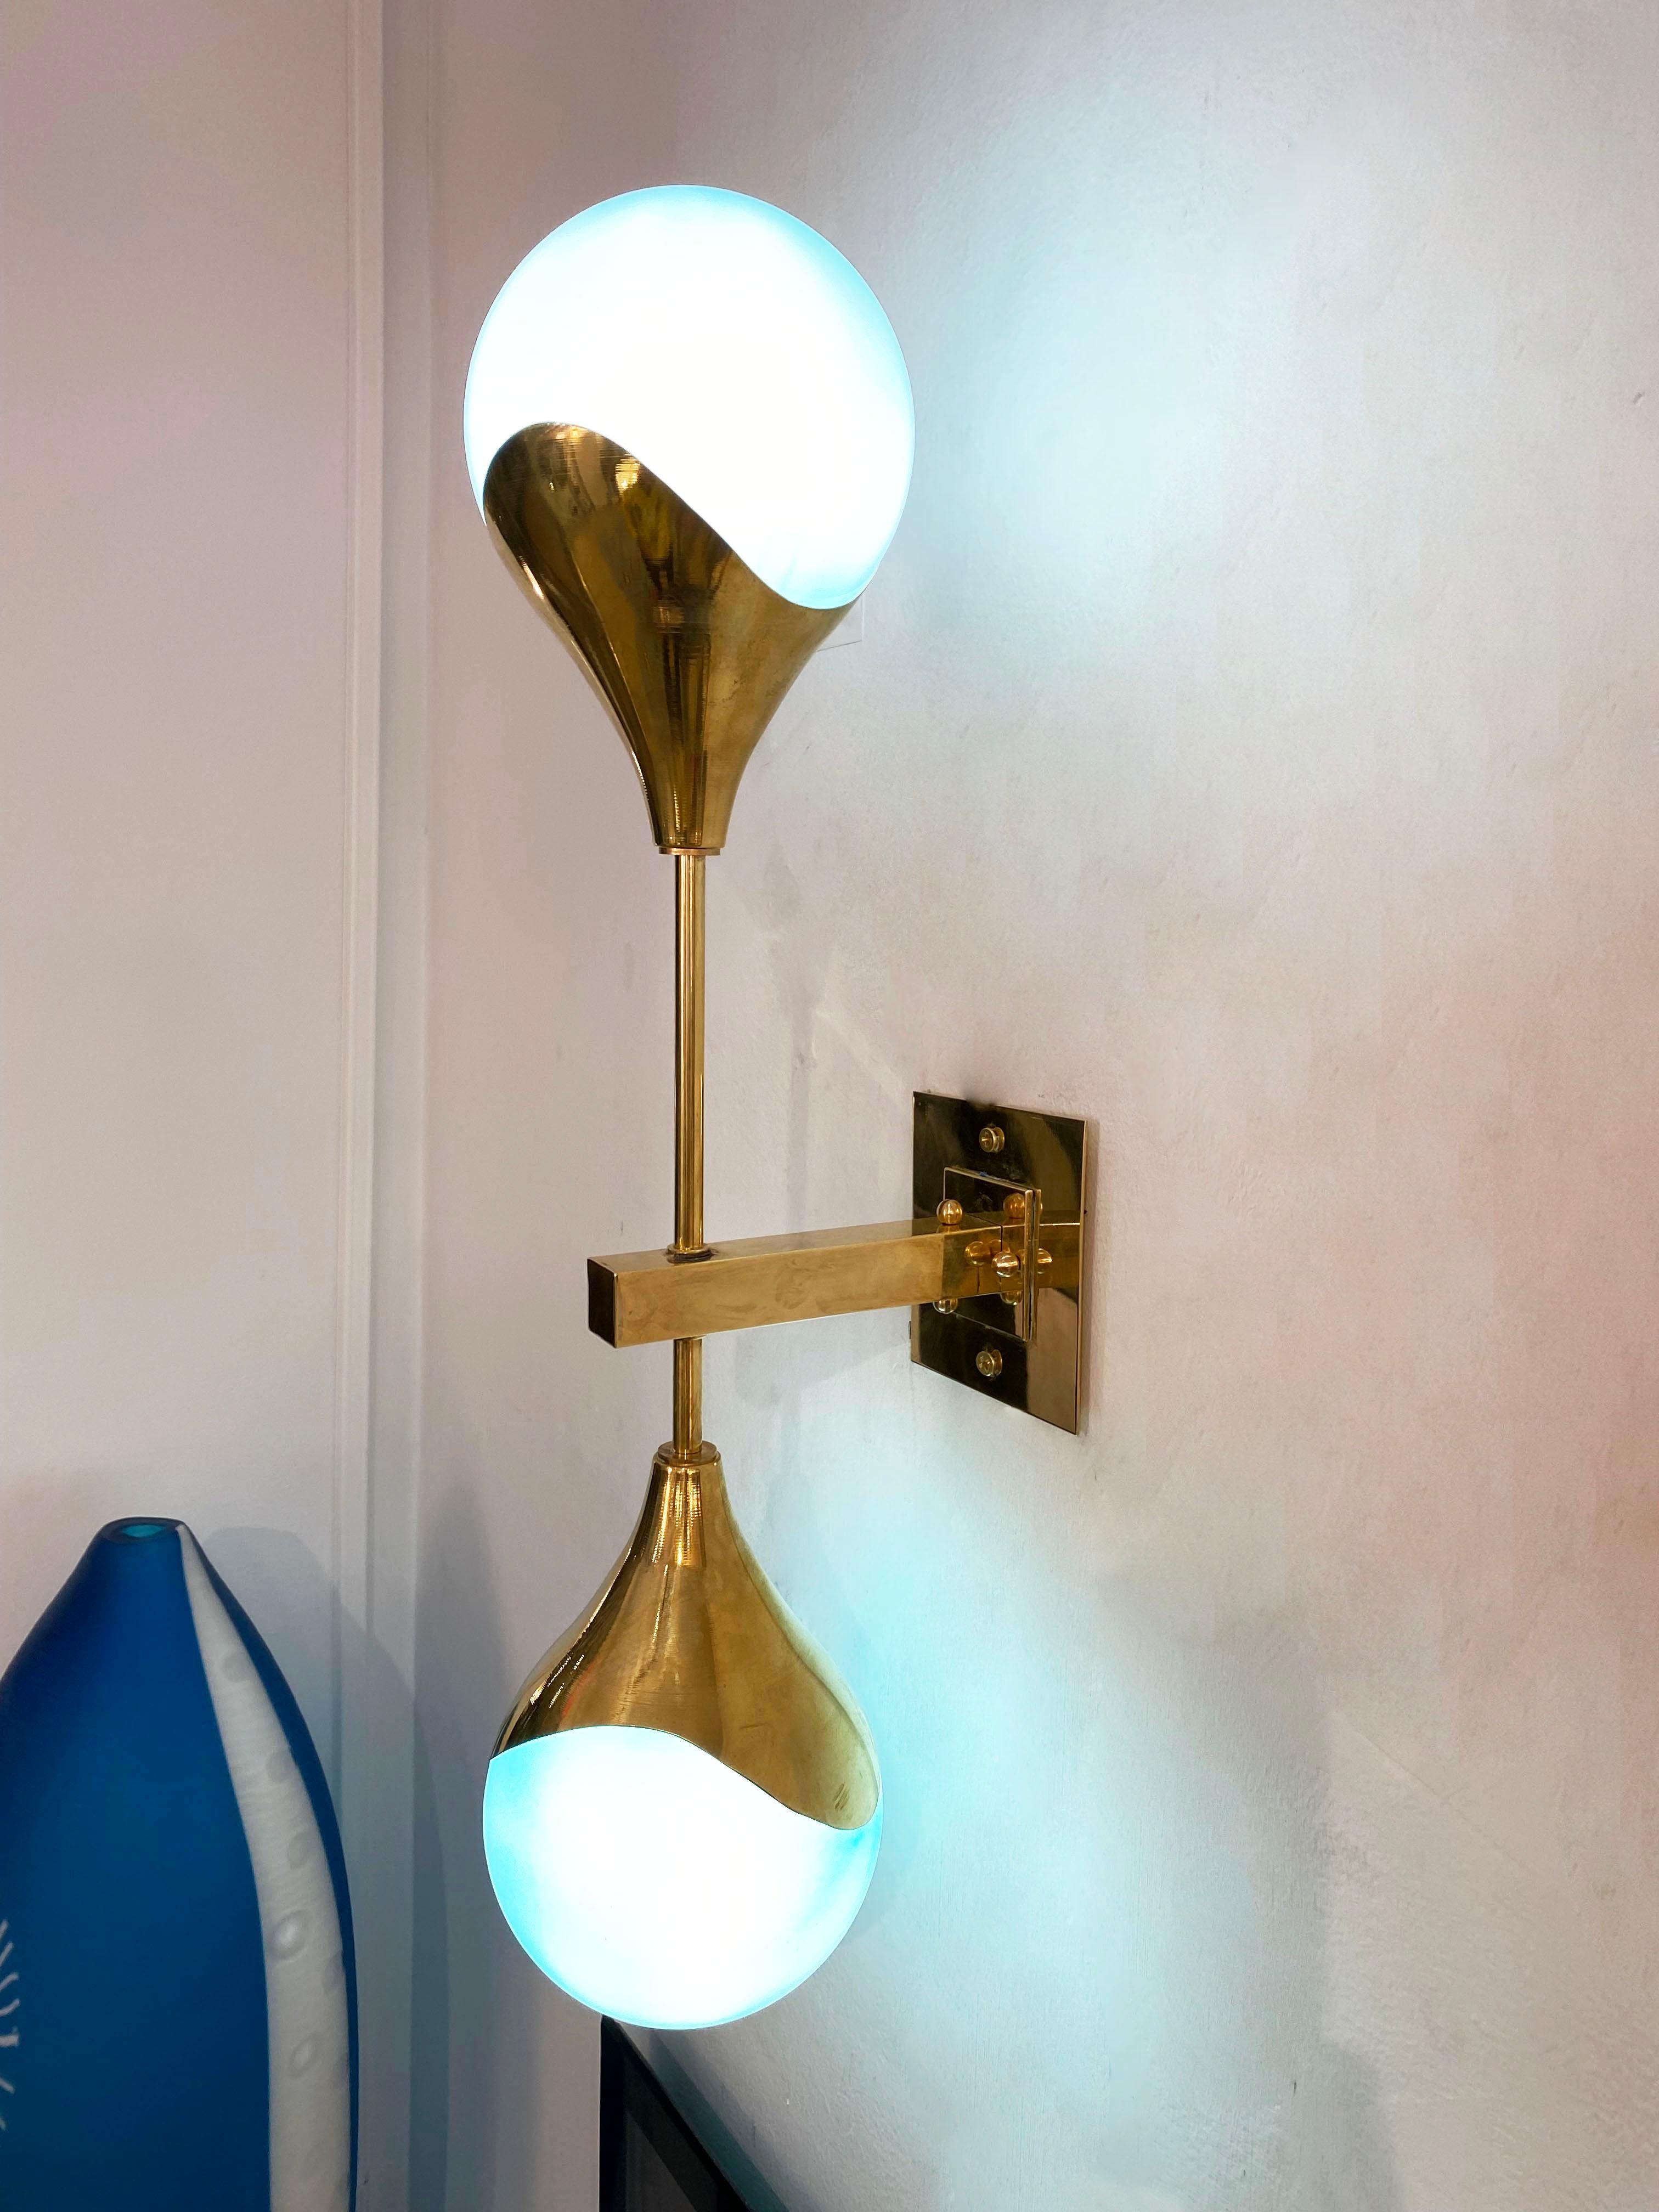 Zeitgenössische Stilnovo-Leuchten im Mid-Century Modern-Stil aus Messing, vollständig in Italien handgefertigt, mit hellblauen türkisfarbenen Glasschirmen, die mit weißem Glas überzogen sind, um bei Beleuchtung viel leuchtendes Licht zu erzeugen.